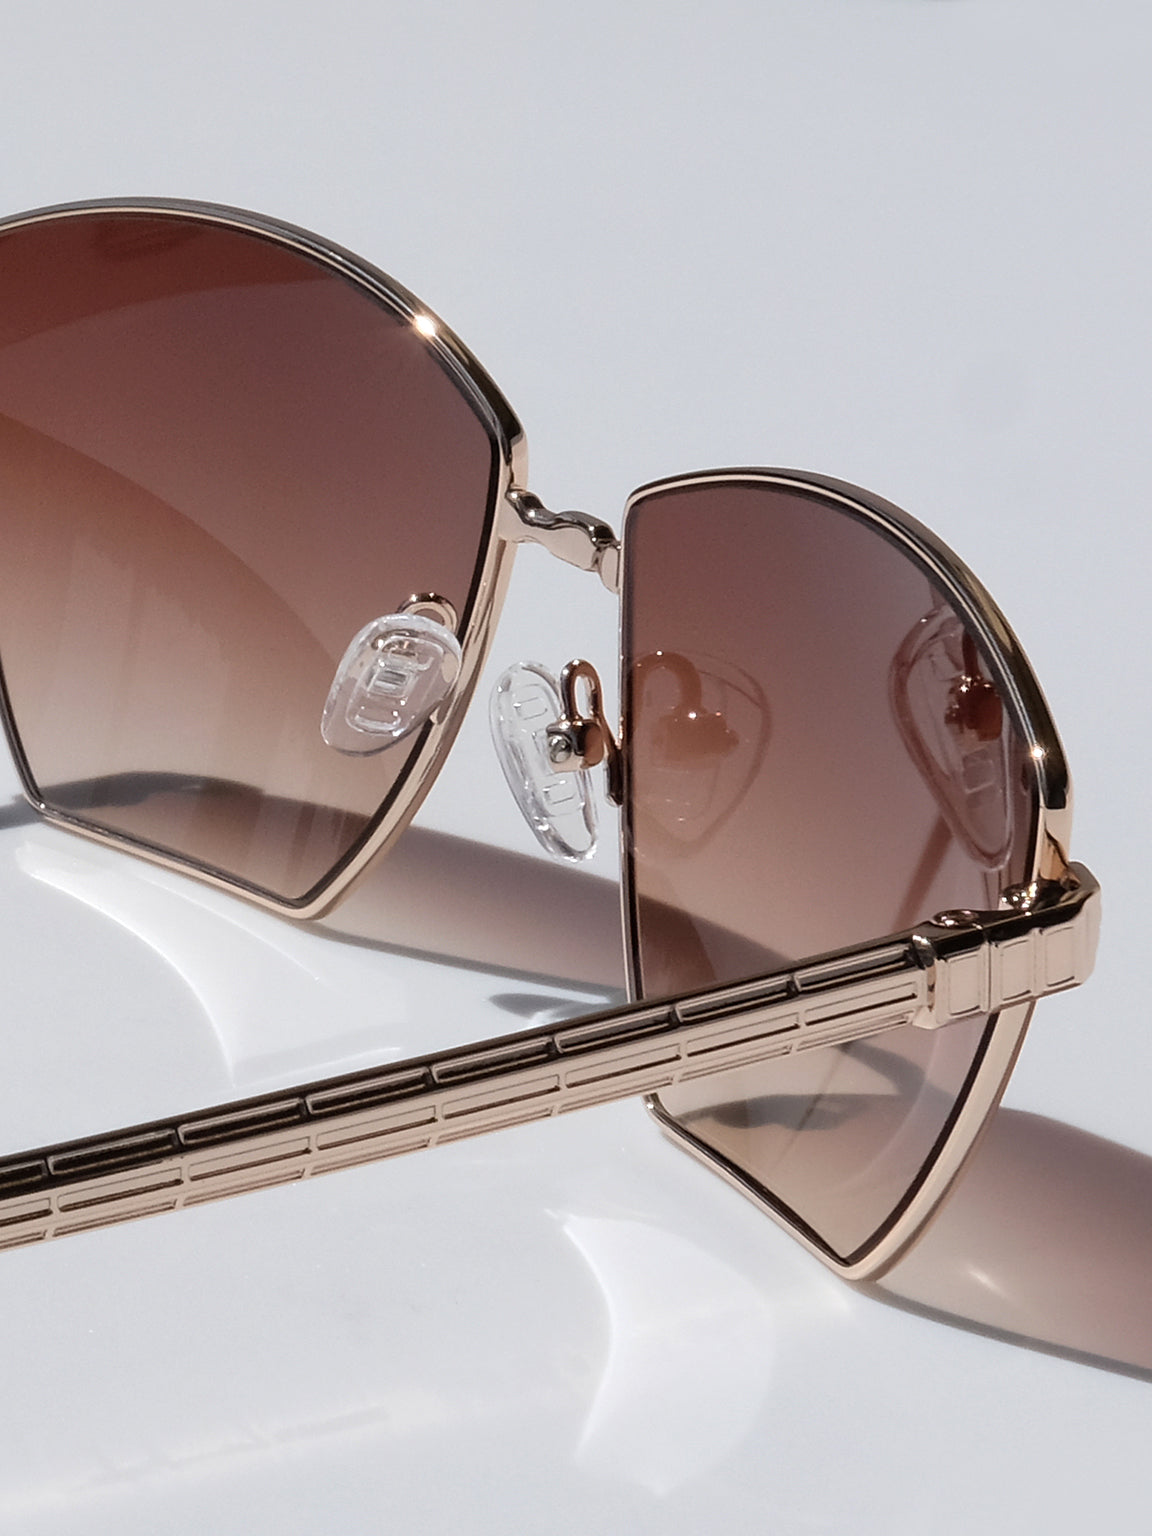 Designer Sunglasses for Women - Cat Eye, Aviator - Christmas